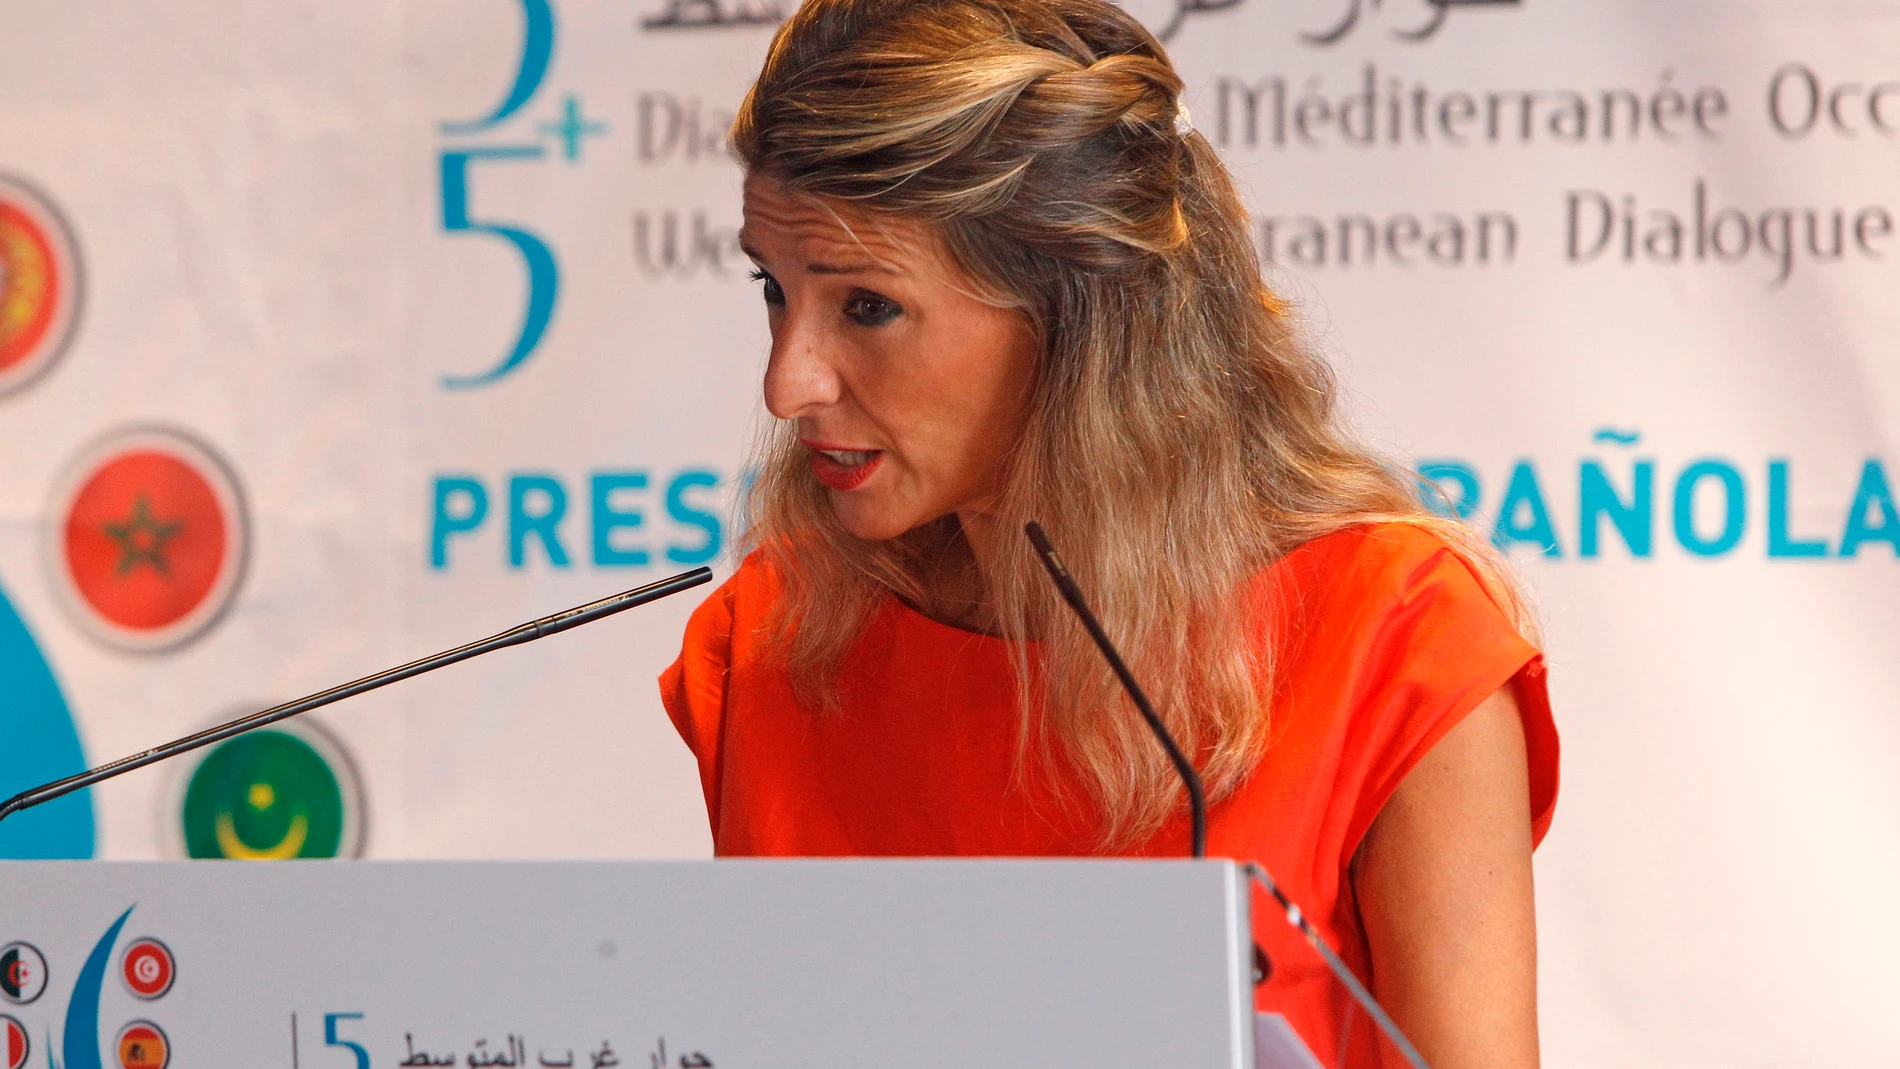 La Vicepresidenta segunda y ministra de Trabajo y Economía Social, Yolanda Díaz durante la rueda de prensa y presentación del Foro Mediterráneo Occidental